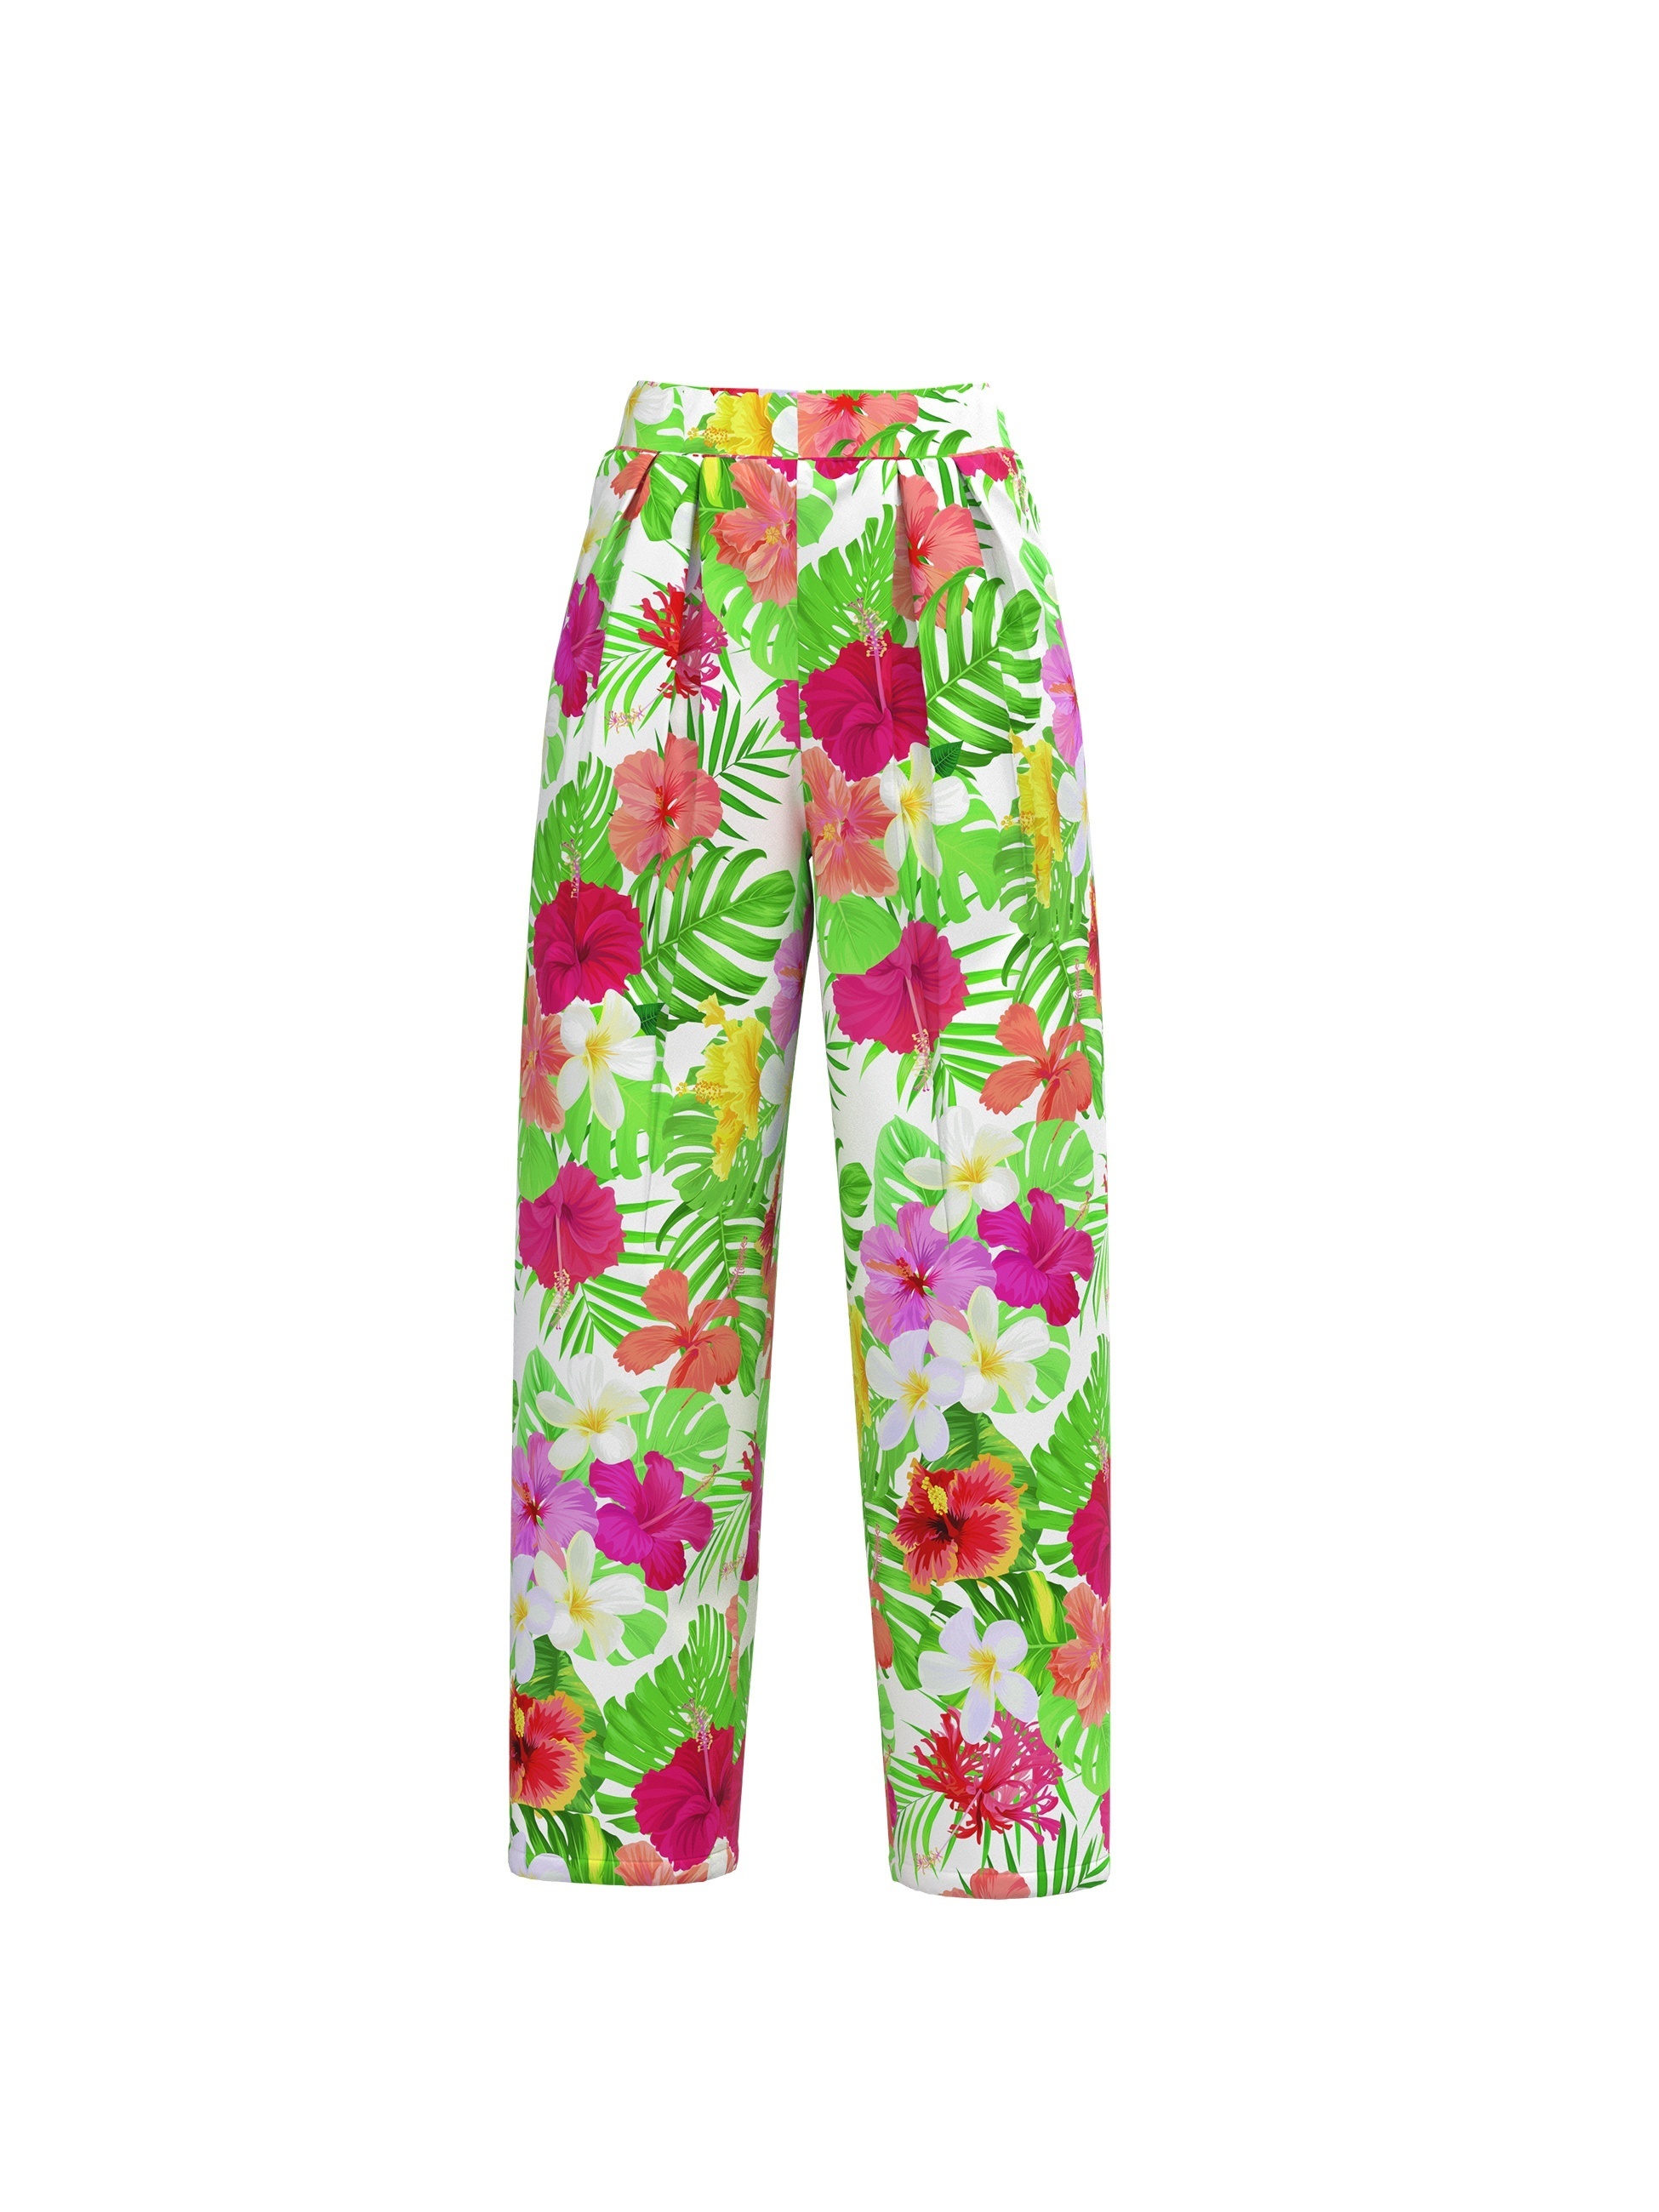 Casual Eşleştirme İki Parçalı Takım, Kısa Kollu Crop T-shirt + Çiçek Baskılı Geniş Bacak Pantolon Kıyafetleri, Kadın Giyim